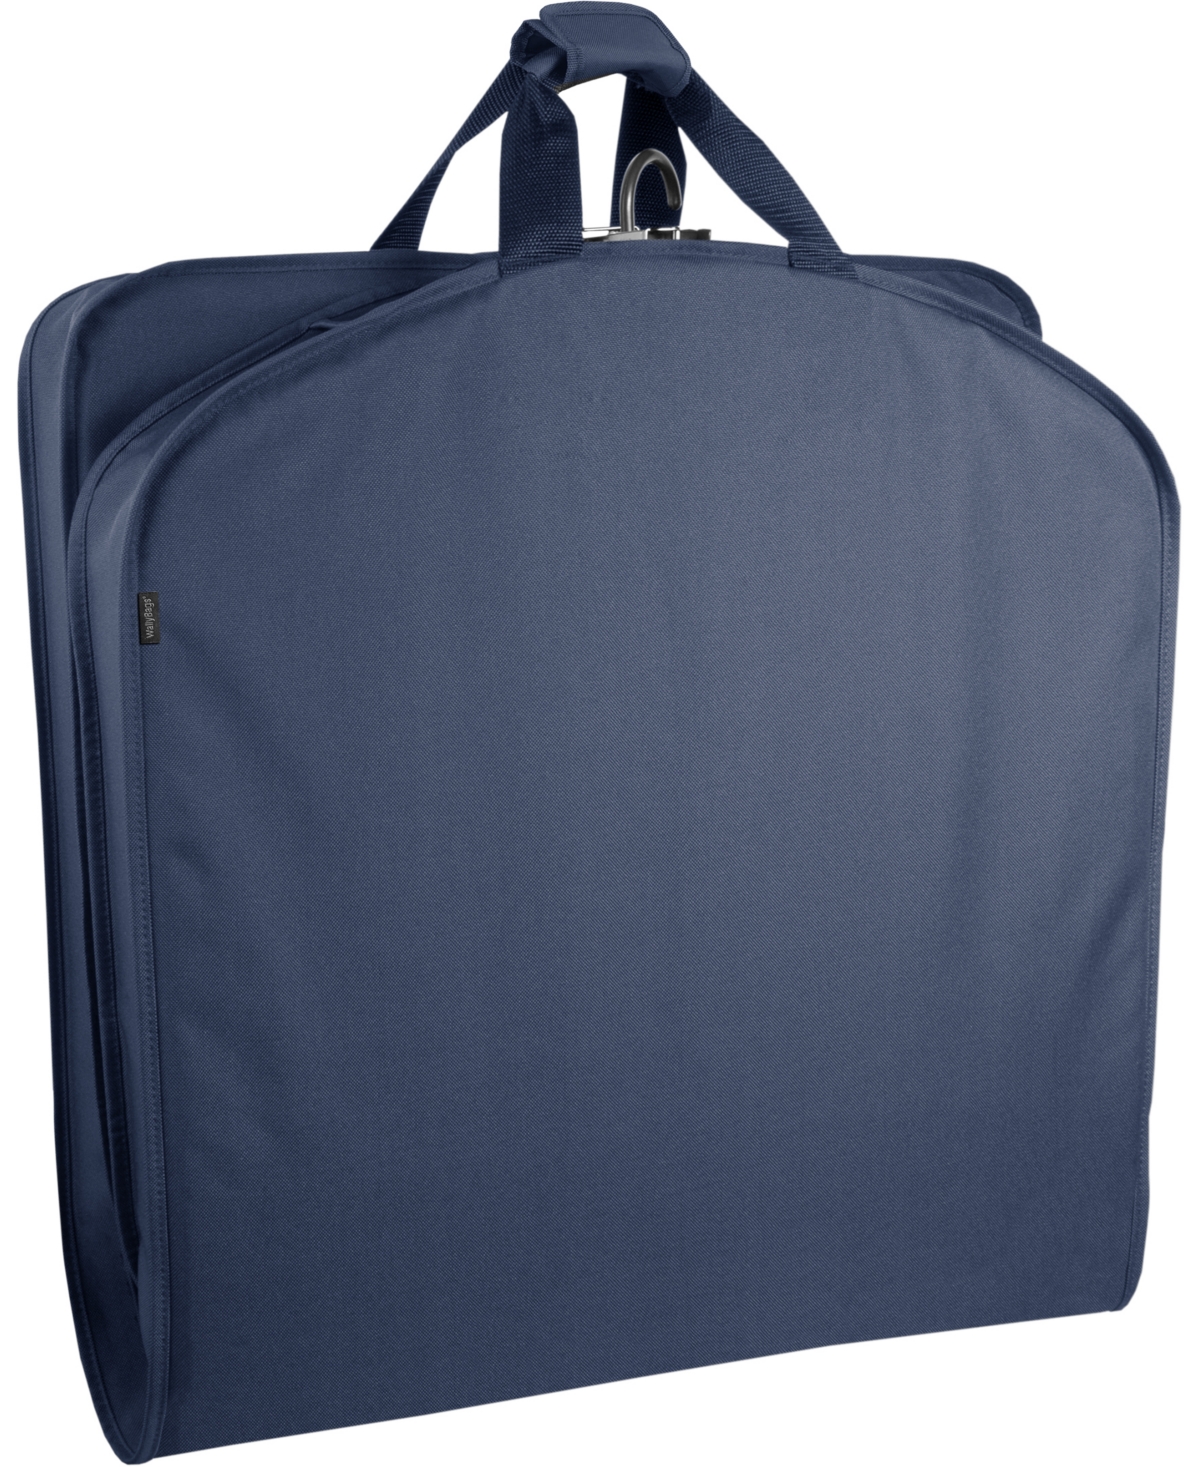 52" Deluxe Travel Garment Bag - Black